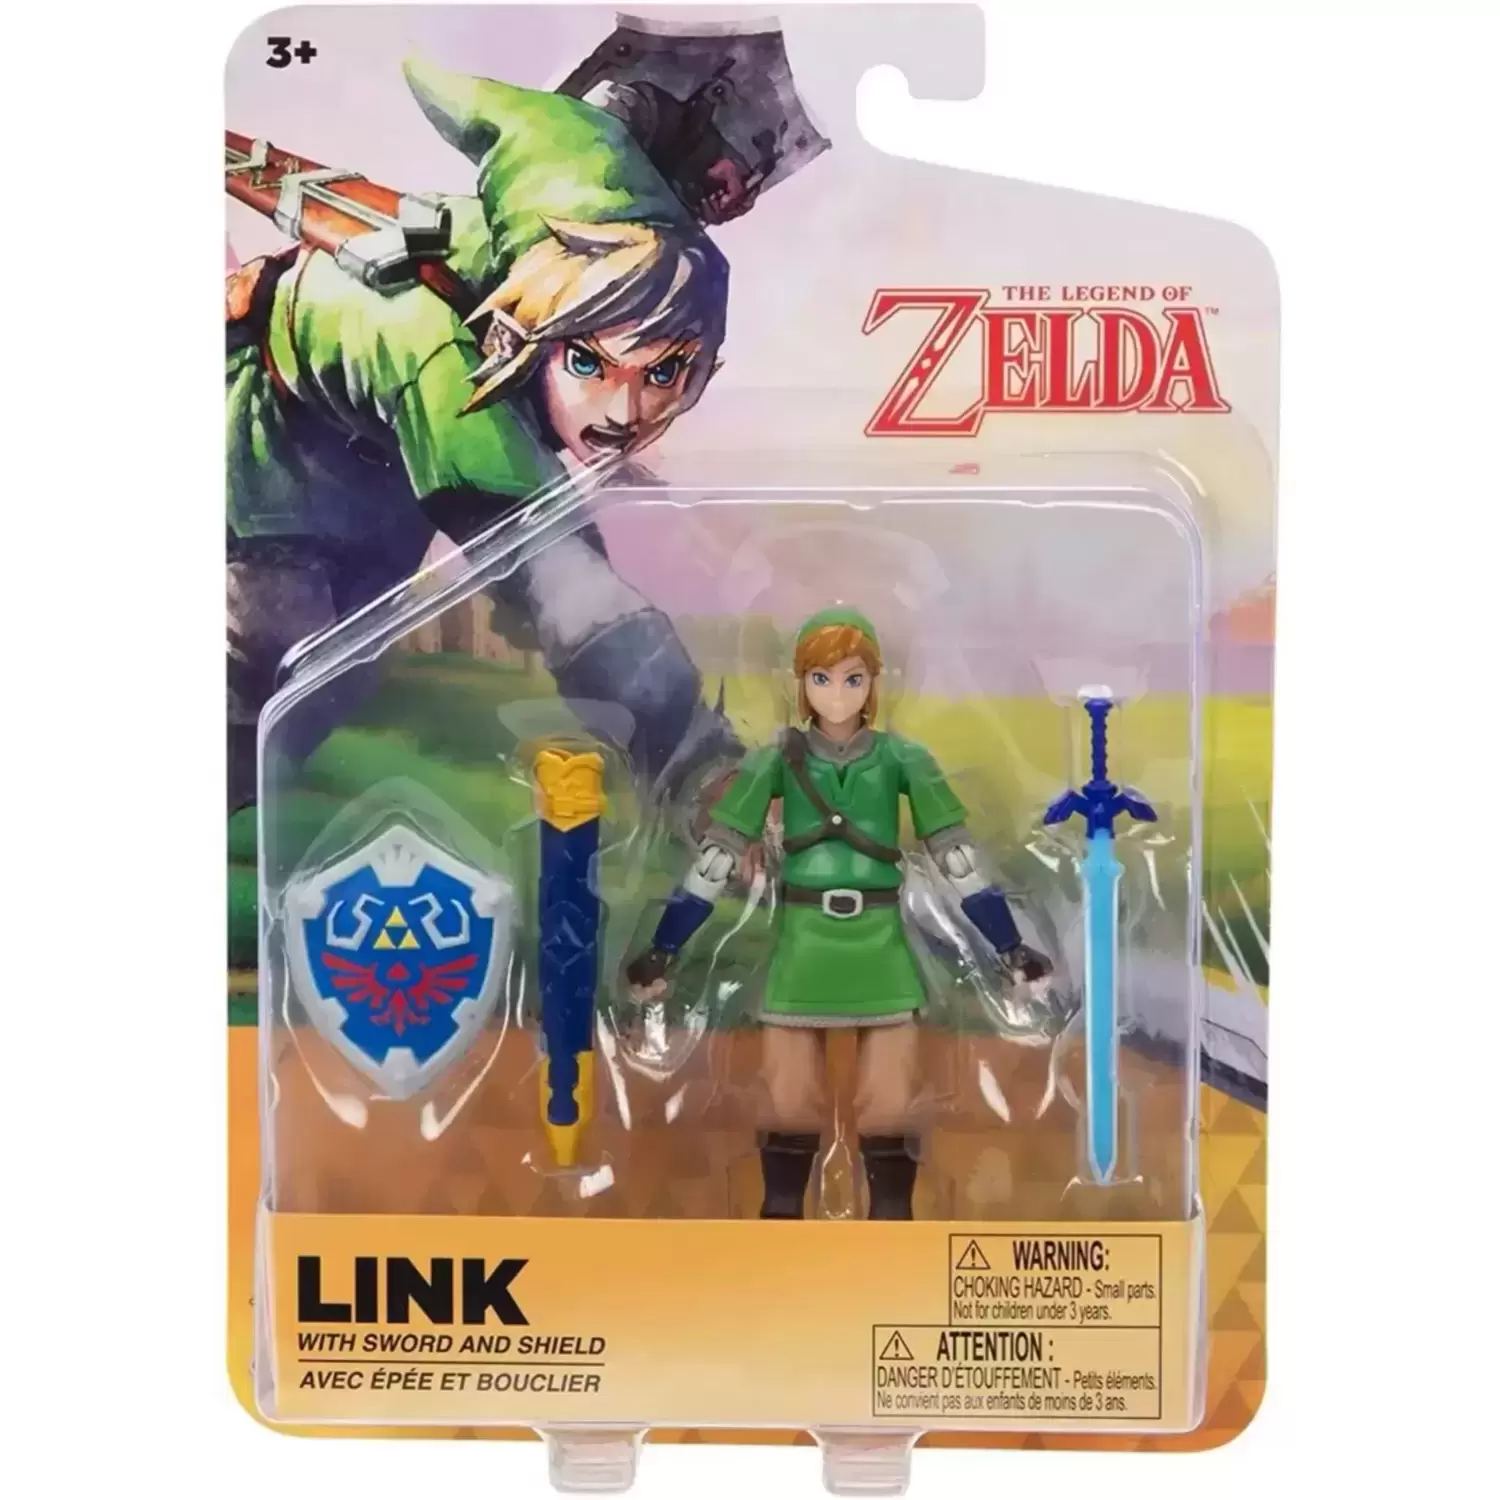 The Legend Of Zelda - Jakks Pacific - Link with sword and Shield